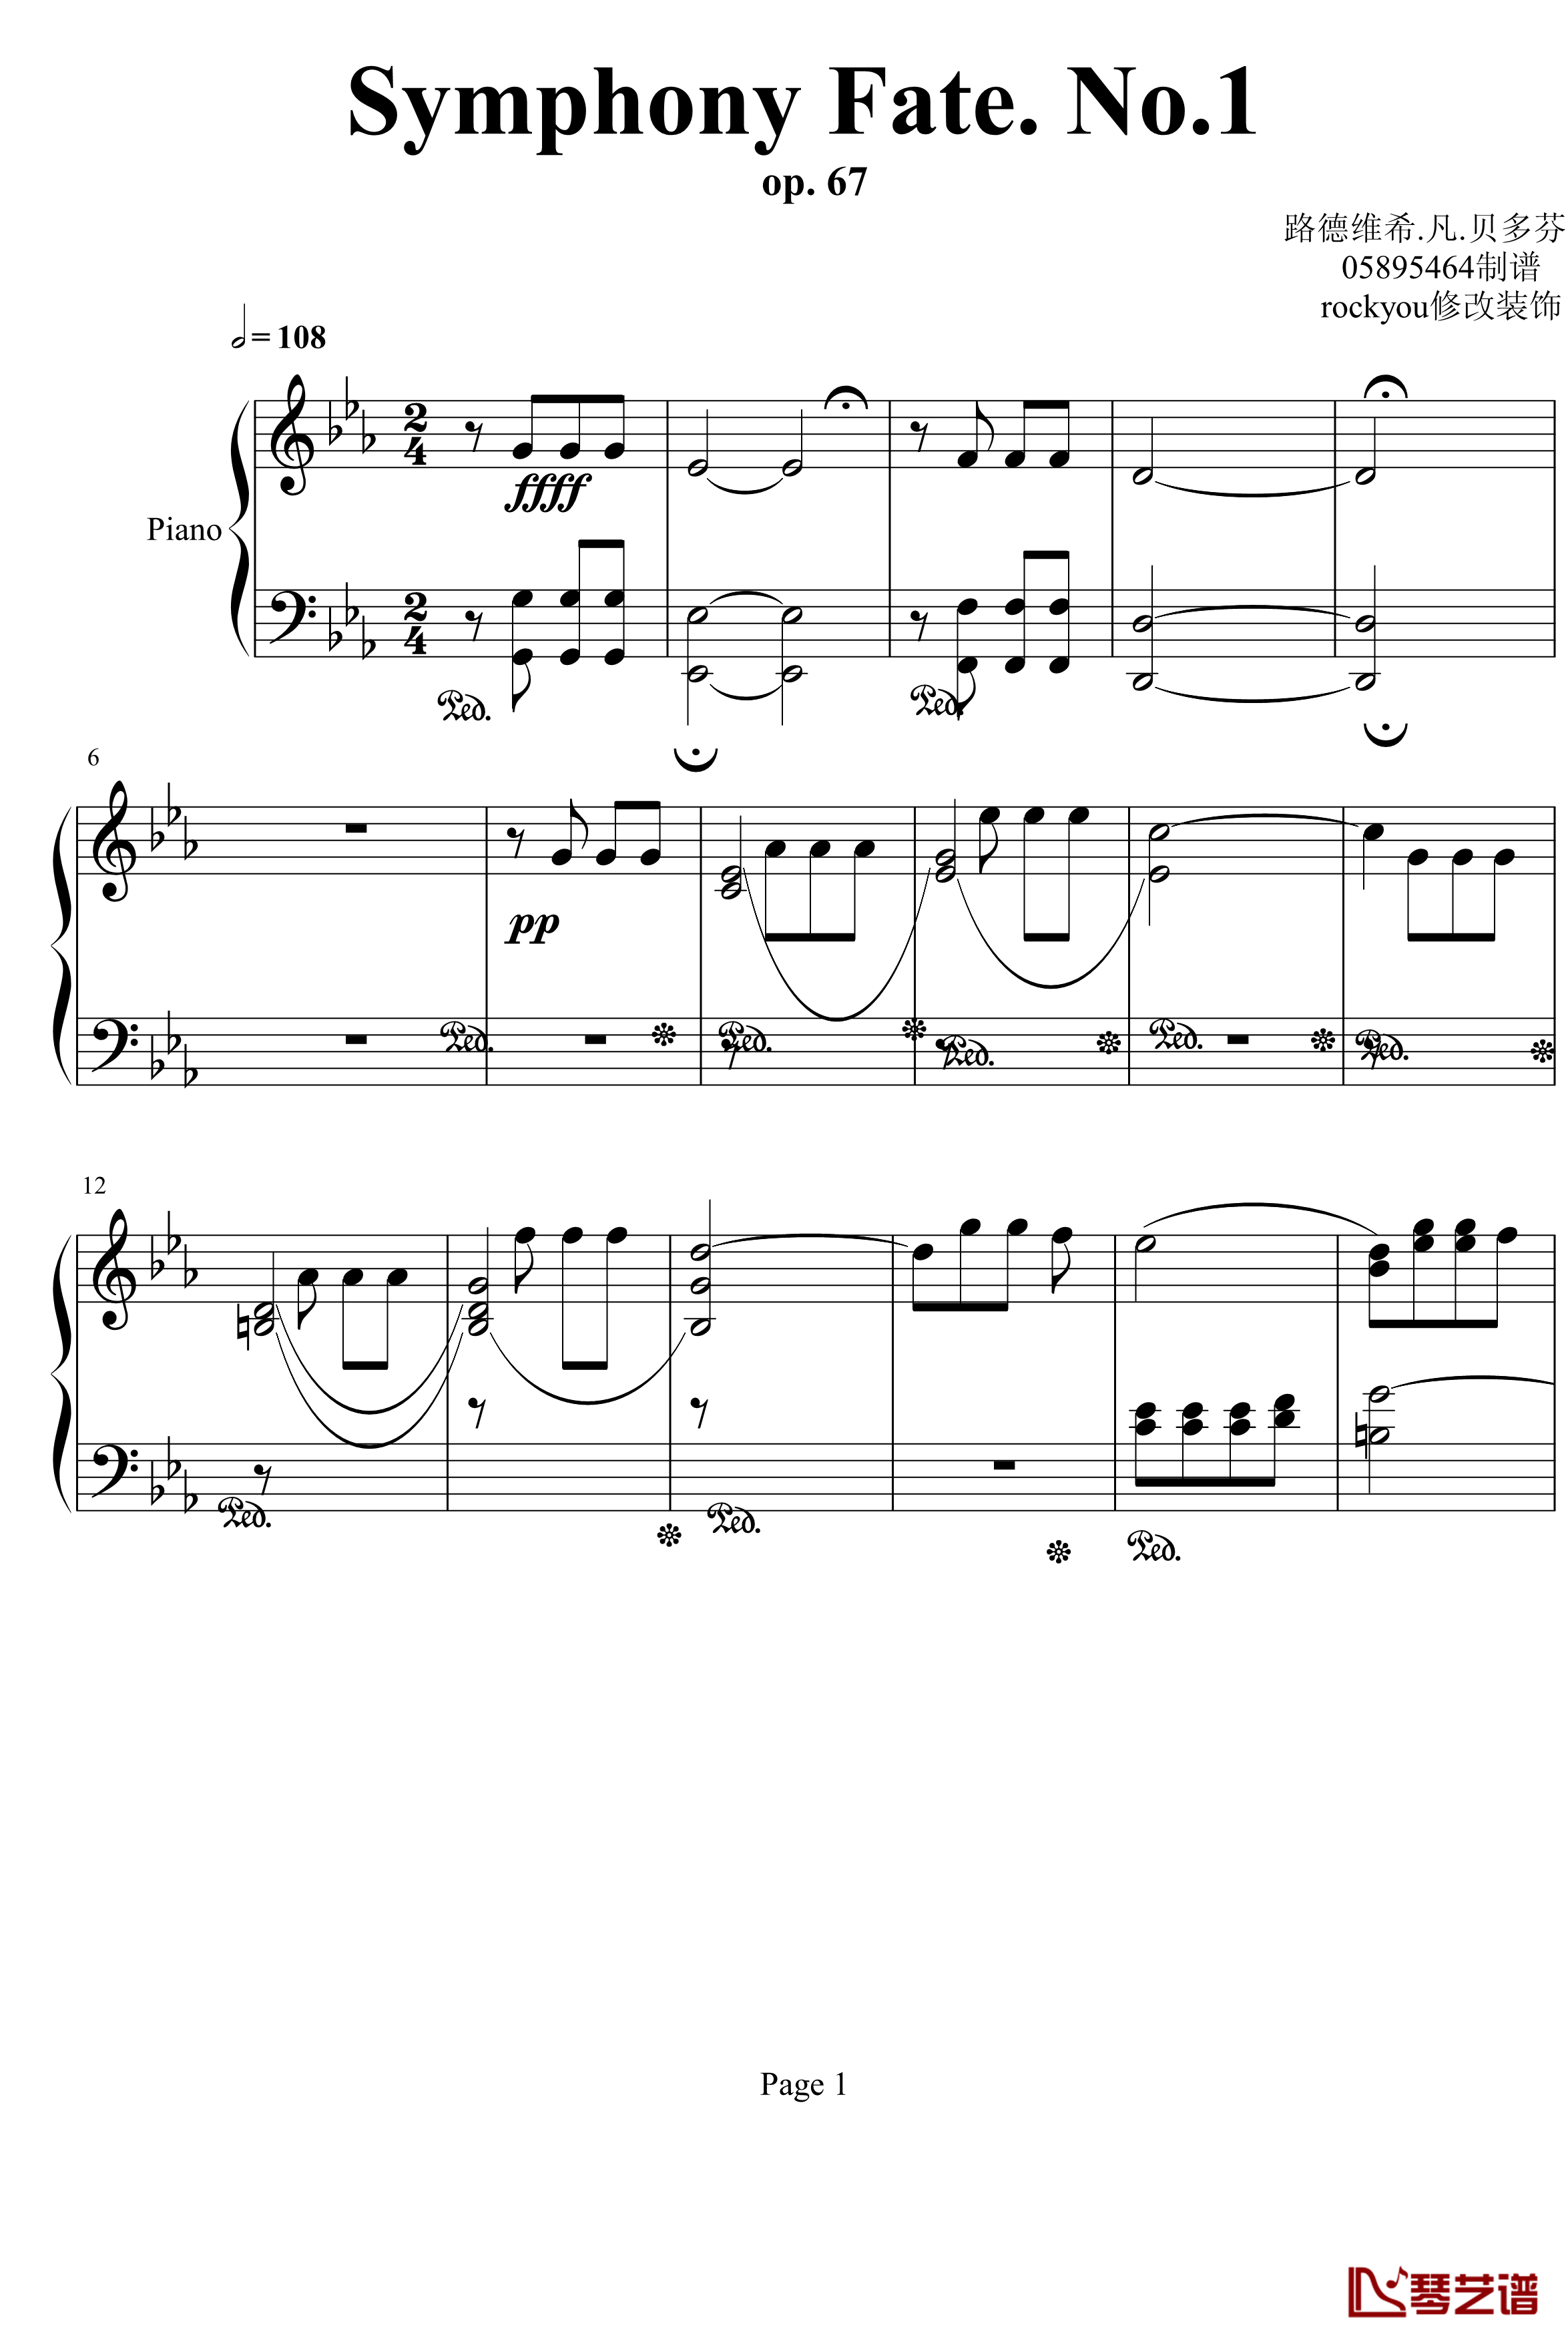 命运第一乐章钢琴独奏钢琴谱-Symphony Fate .No.1-贝多芬-beethoven1